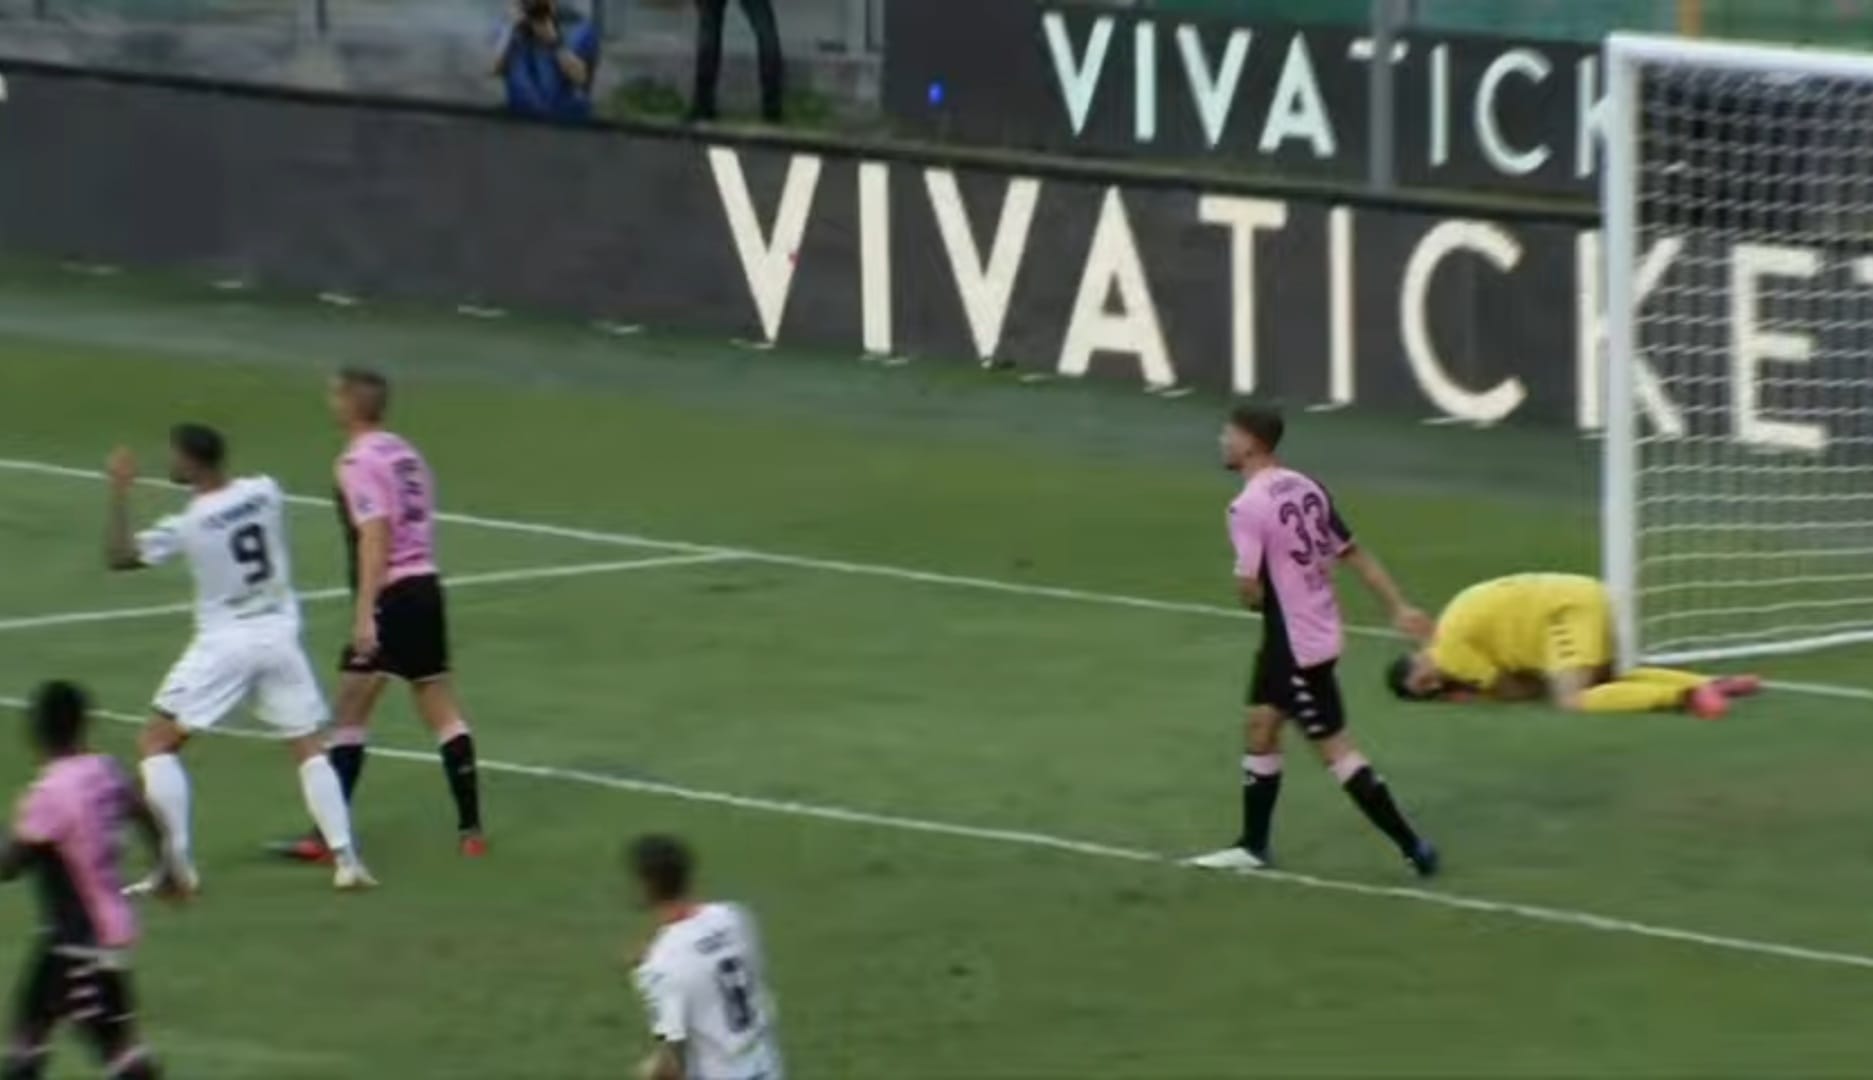 Il Palermo castiga il Foggia (3-0). Rossoneri lenti e disordinati. Emersi tutti i limiti della squadra.